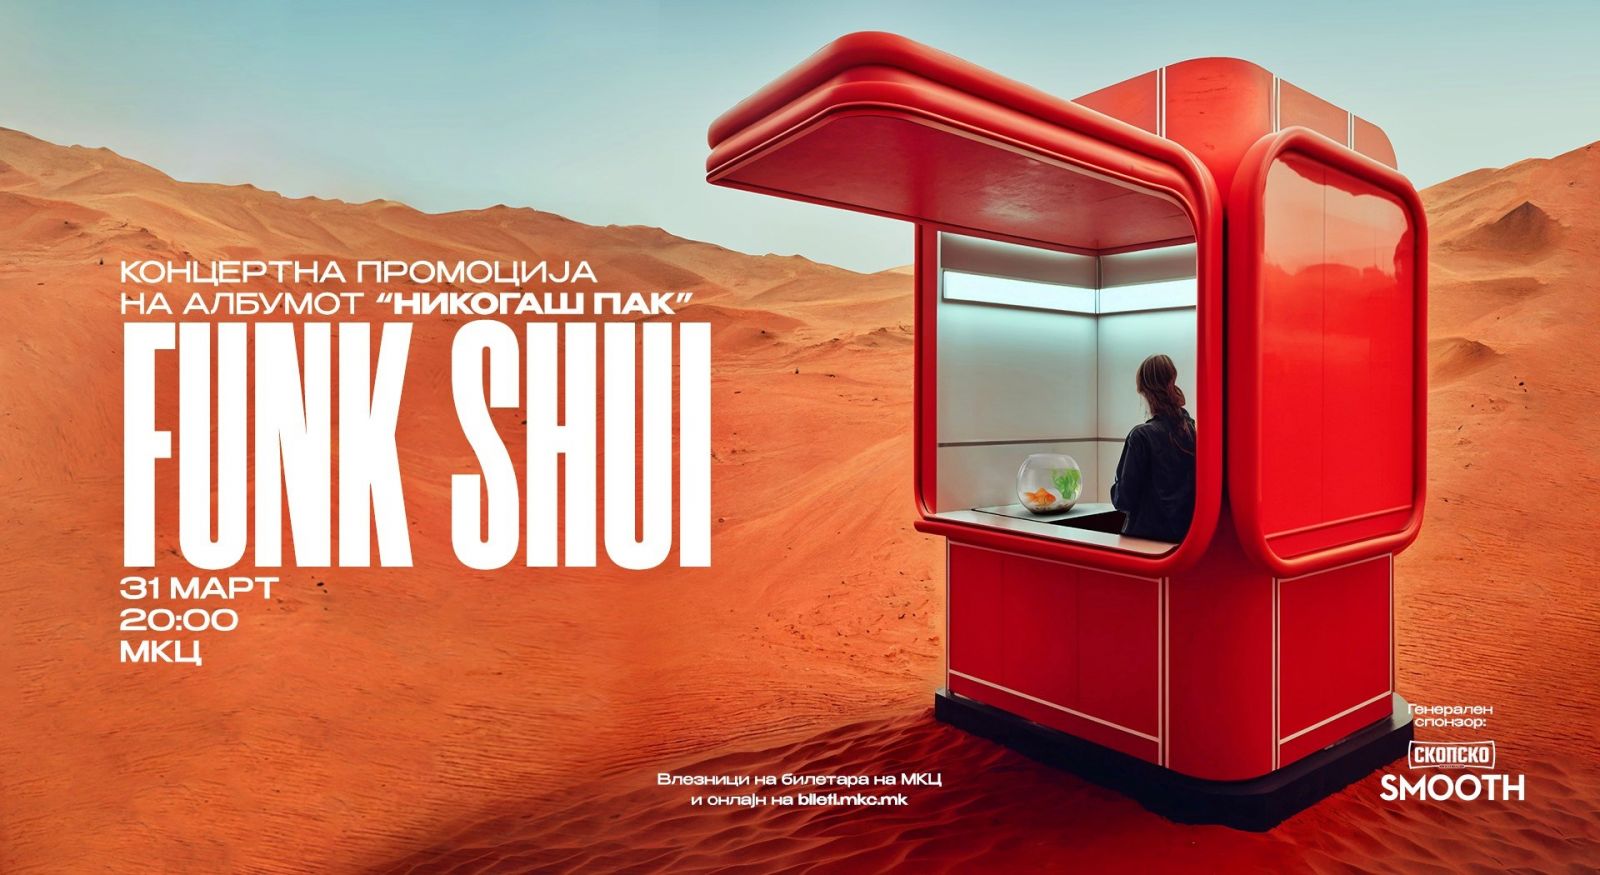 FUNK SHUI – konačno album!